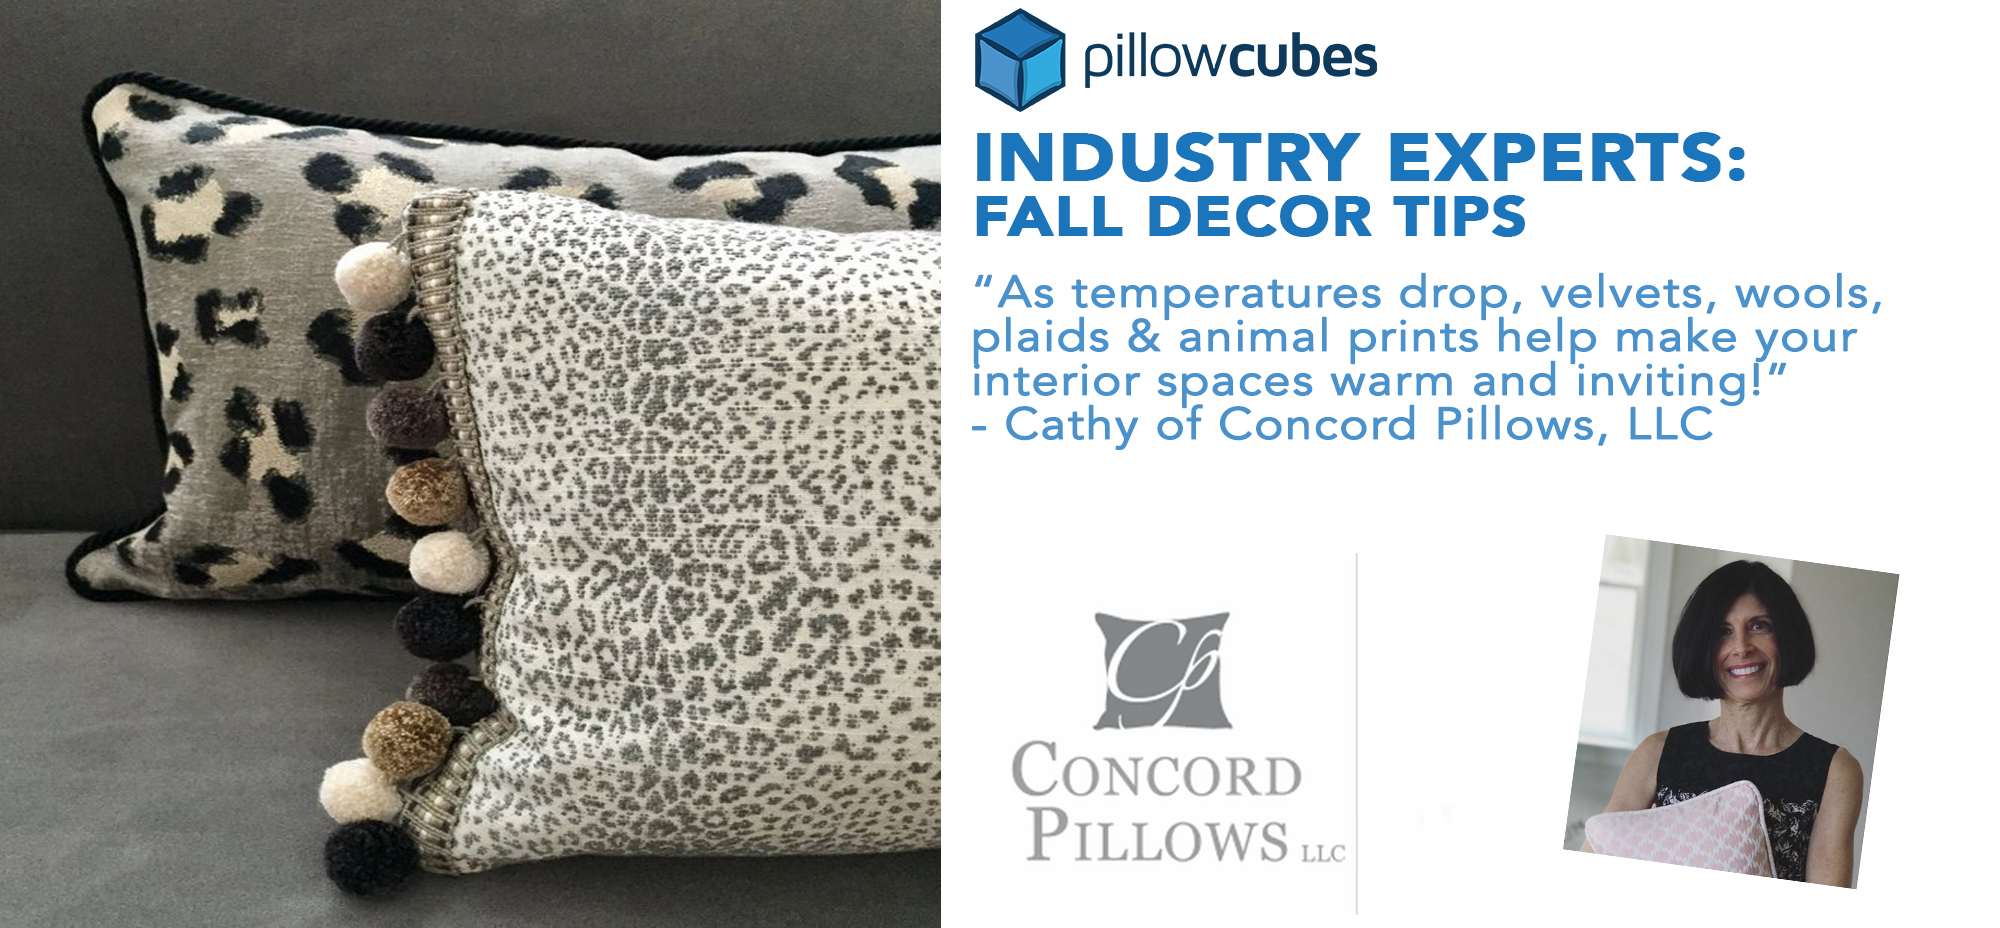 Concord Pillows